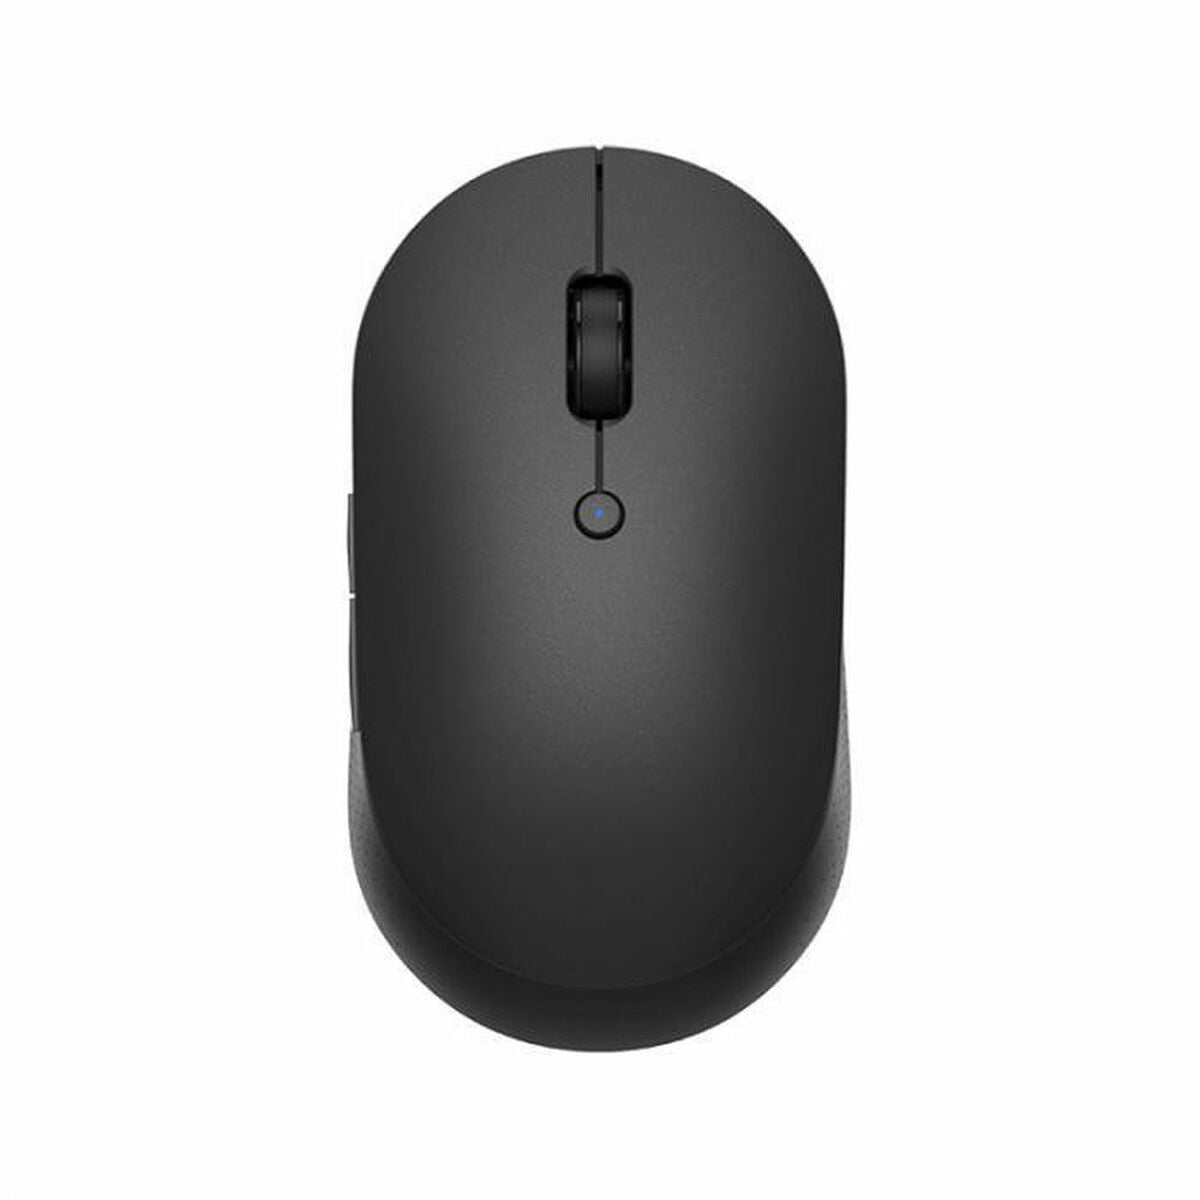 Mouse Xiaomi XM800010 Black (1 Unit)